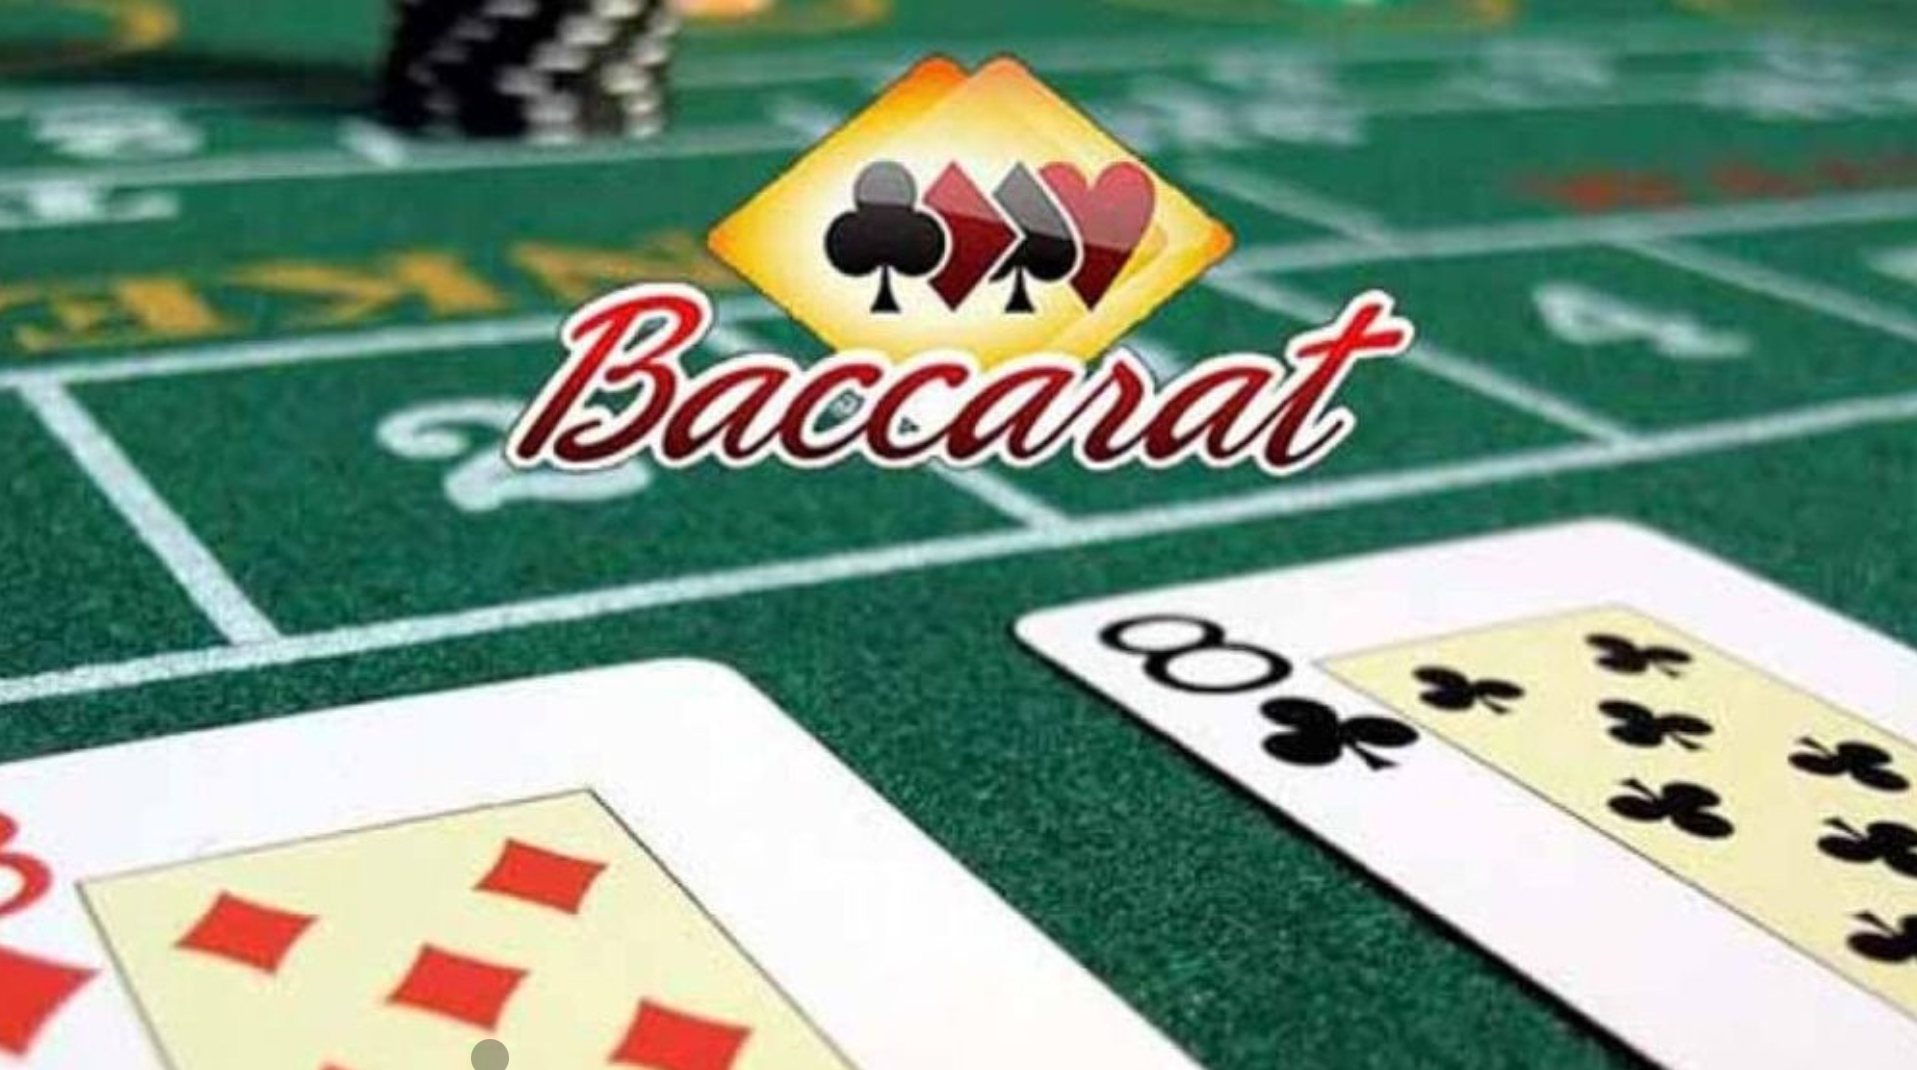 Baccarat là một thể loại game bài trong các sòng bạc casino